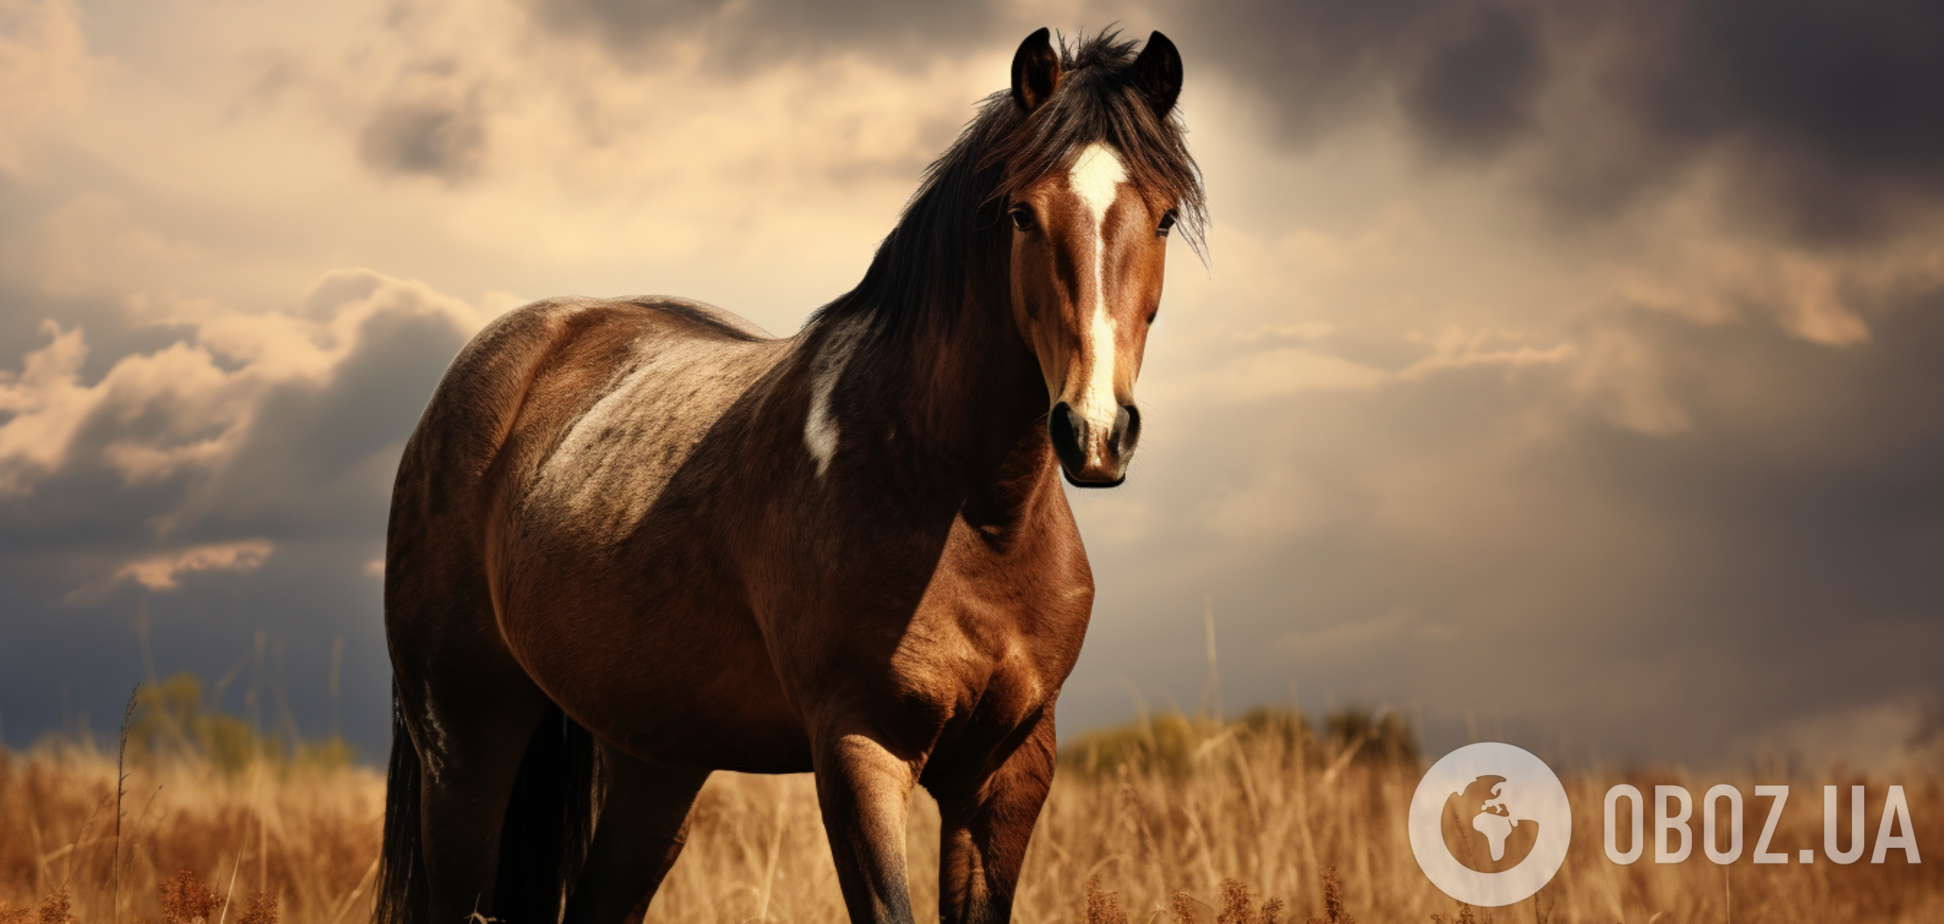 Найдите коня без хвоста: загадка, которая под силу только самым внимательным